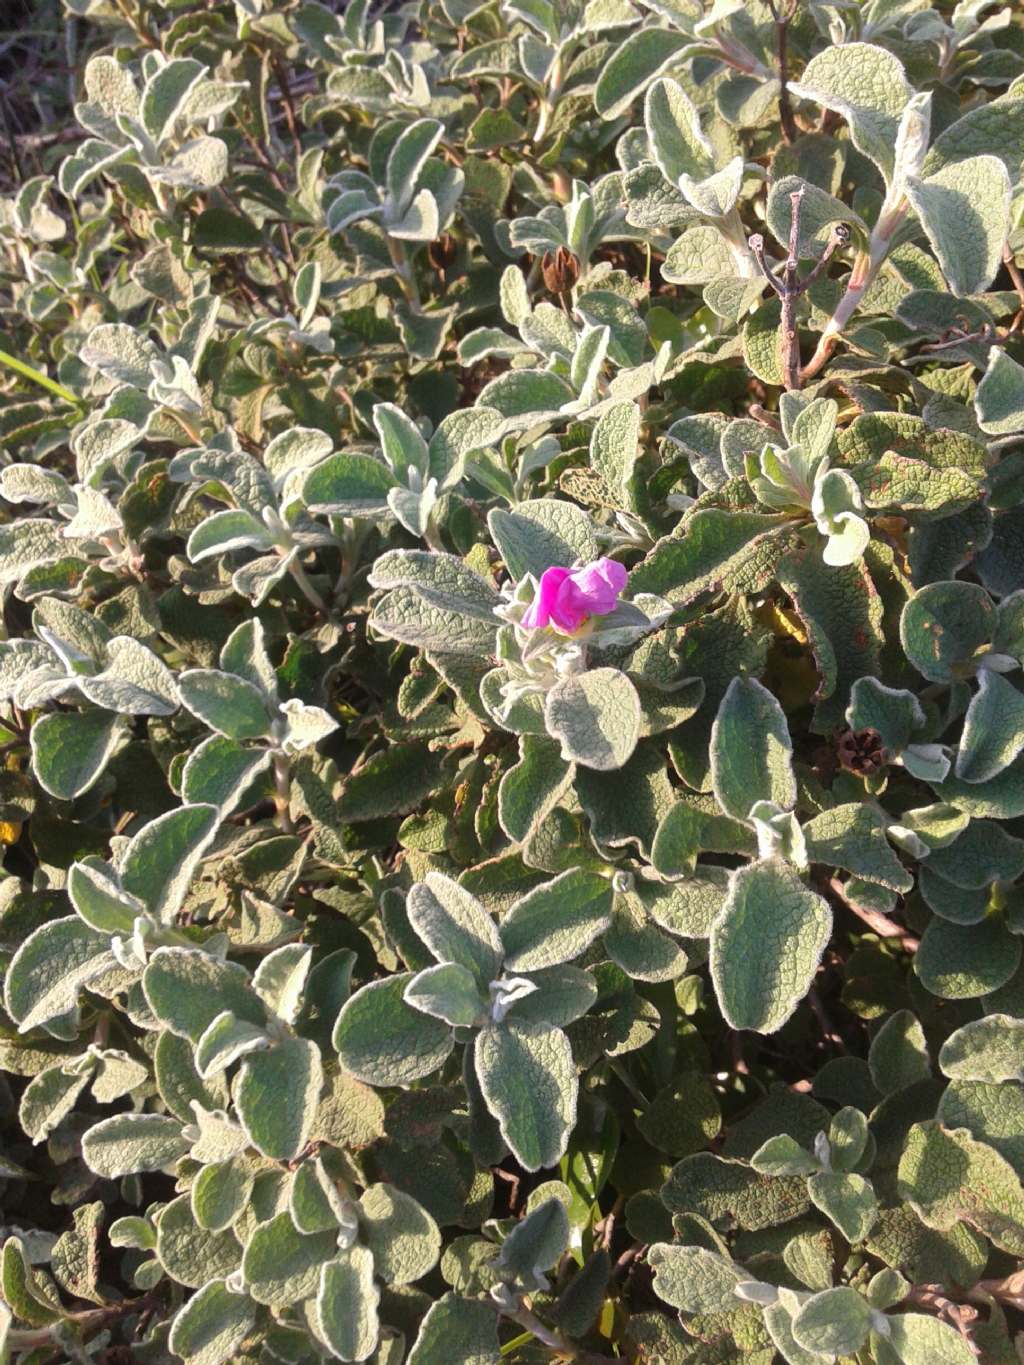 Simil Salvia - Cistus creticus subsp. eriocephalus